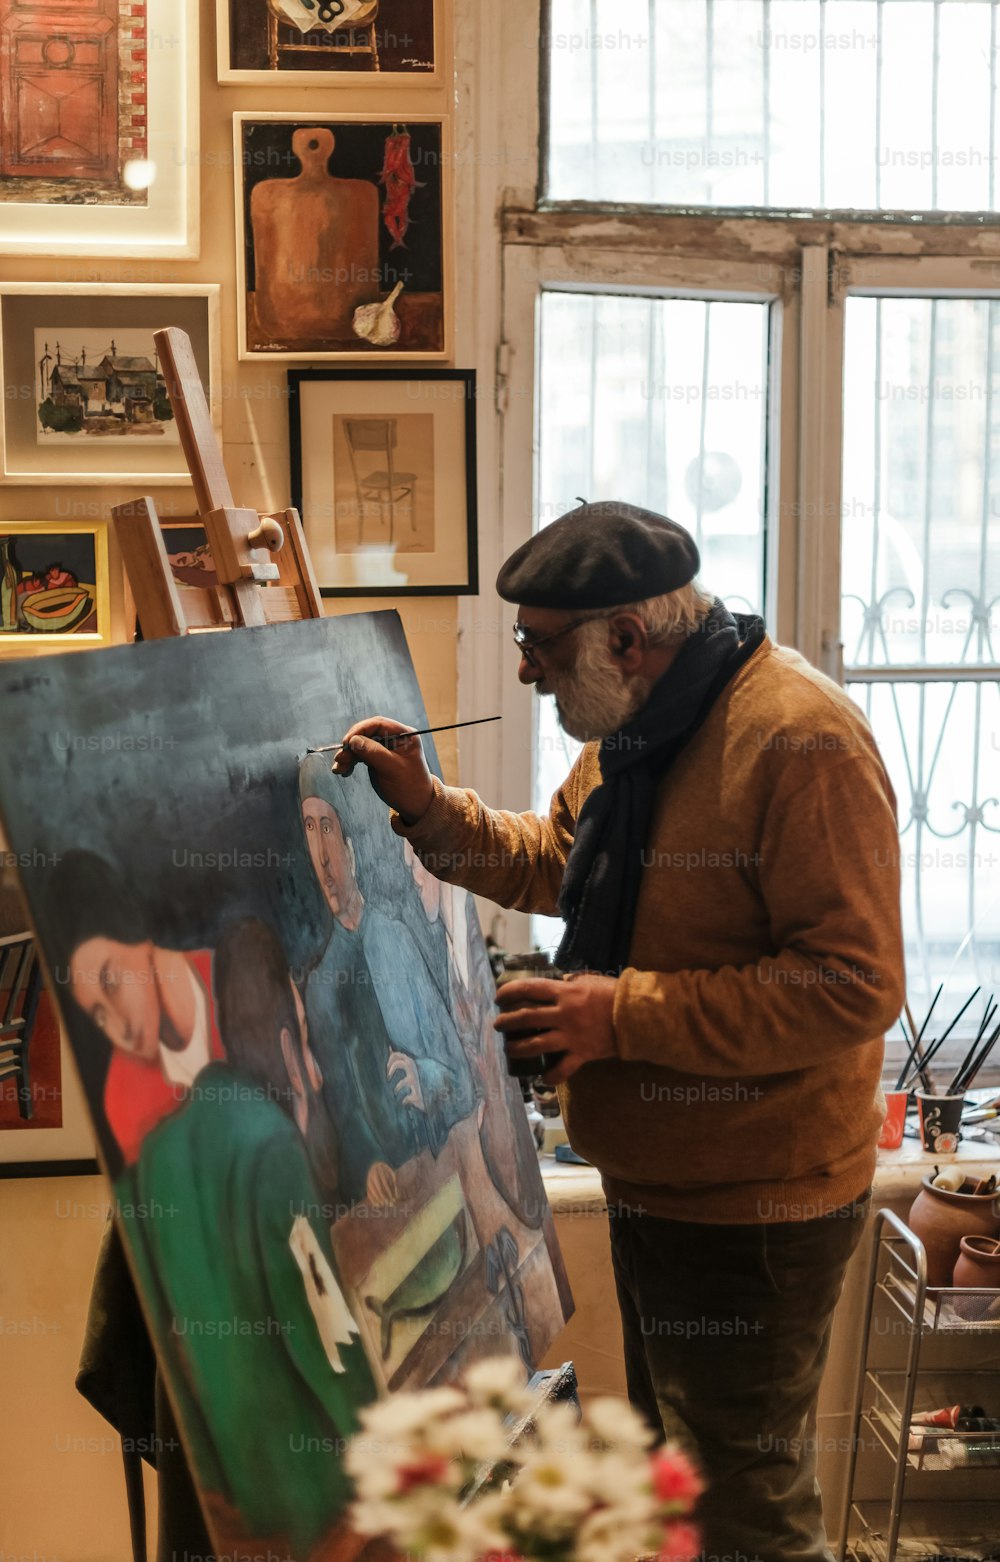 Un hombre está pintando un cuadro en un caballete